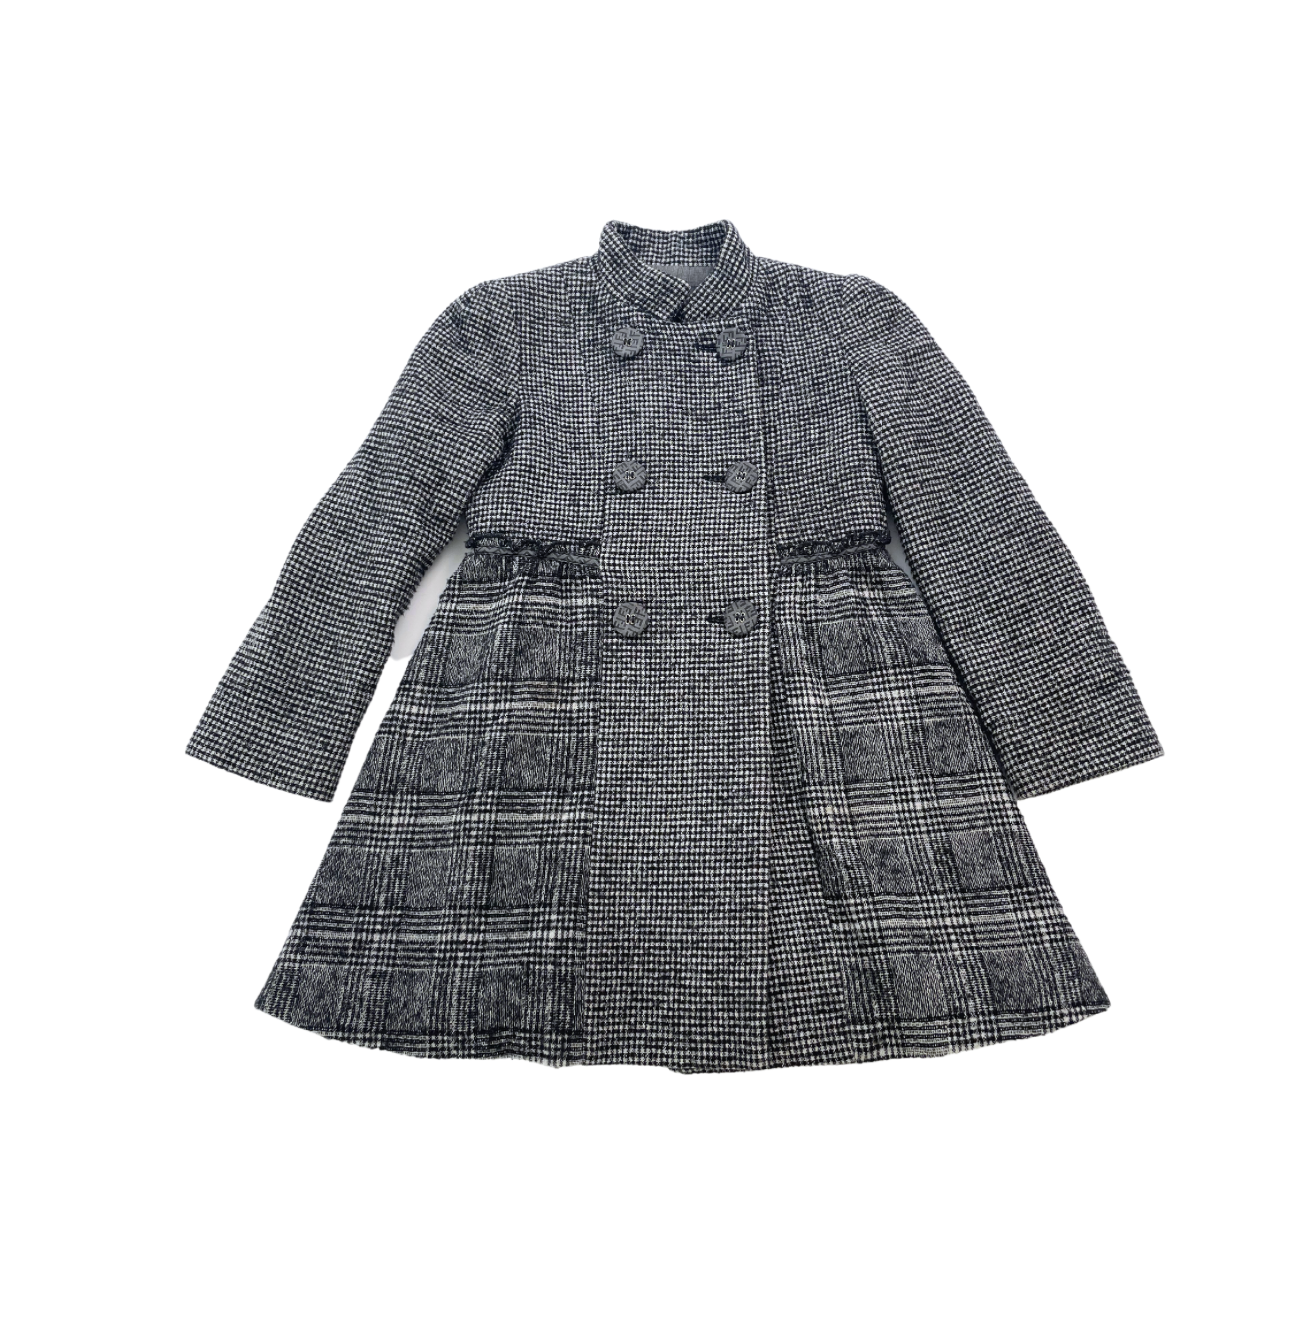 FENDI - Manteau en laine à carreaux noir et blanc - 5 ans